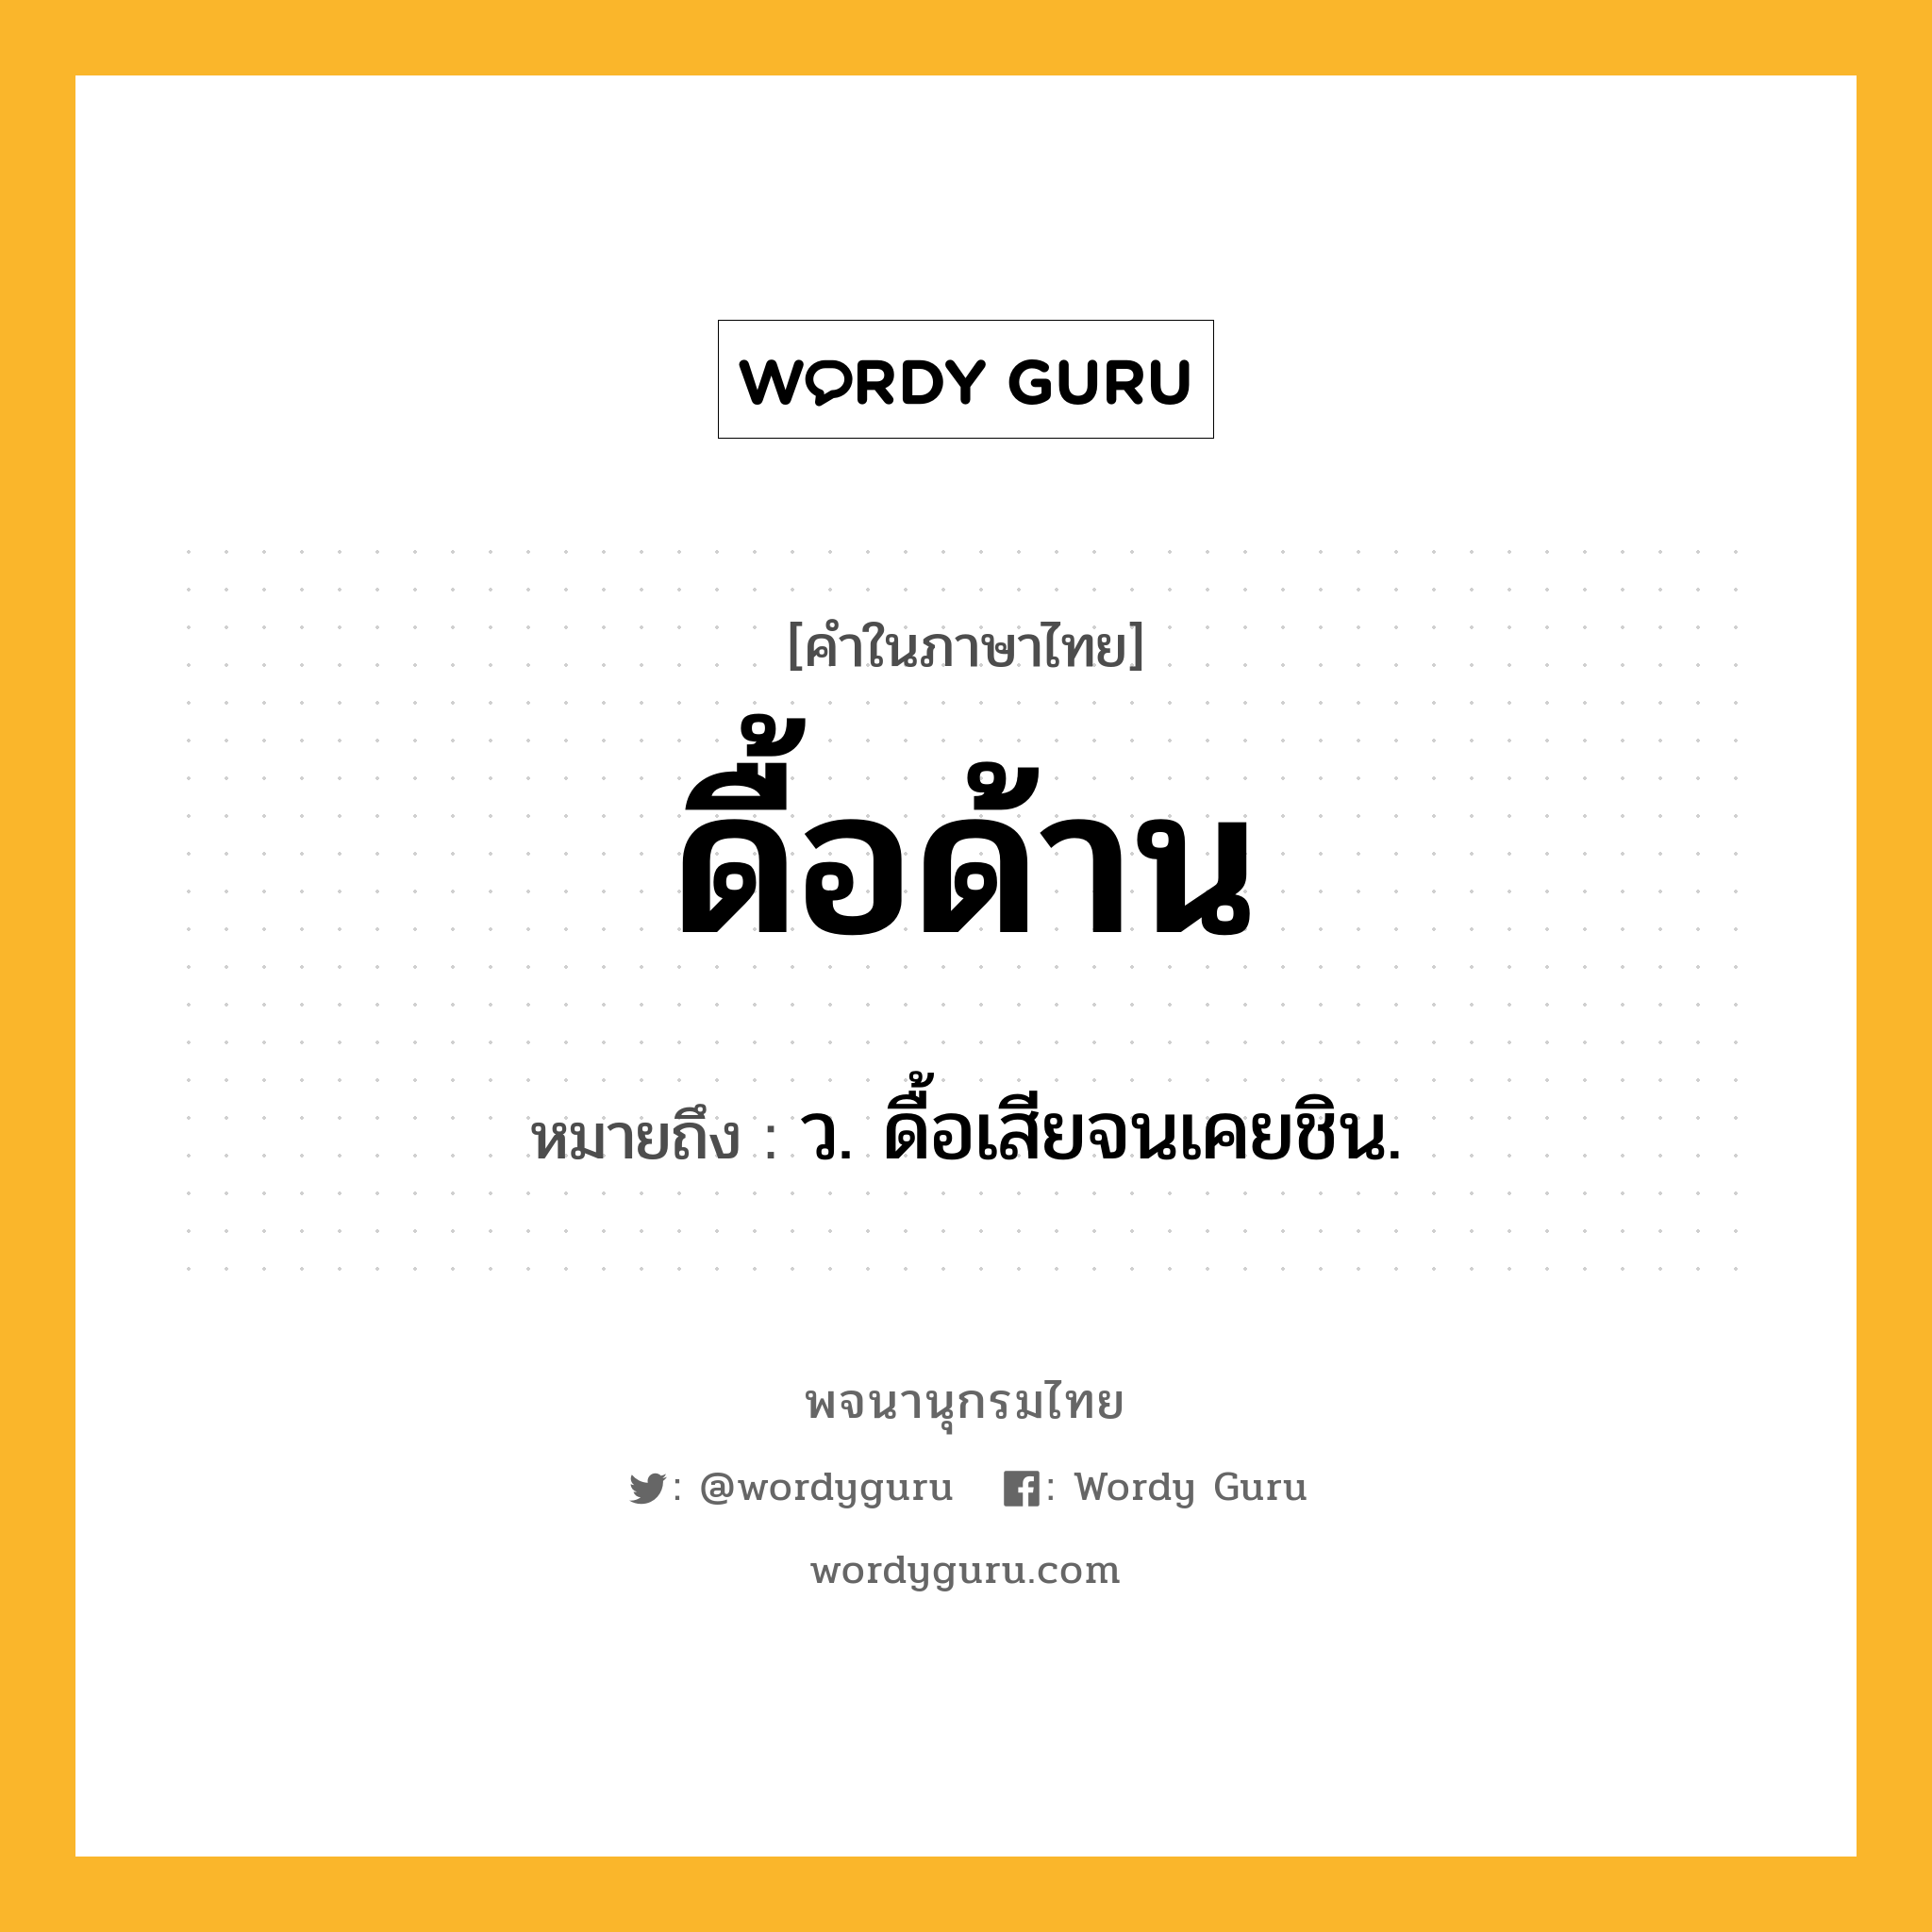 ดื้อด้าน ความหมาย หมายถึงอะไร?, คำในภาษาไทย ดื้อด้าน หมายถึง ว. ดื้อเสียจนเคยชิน.